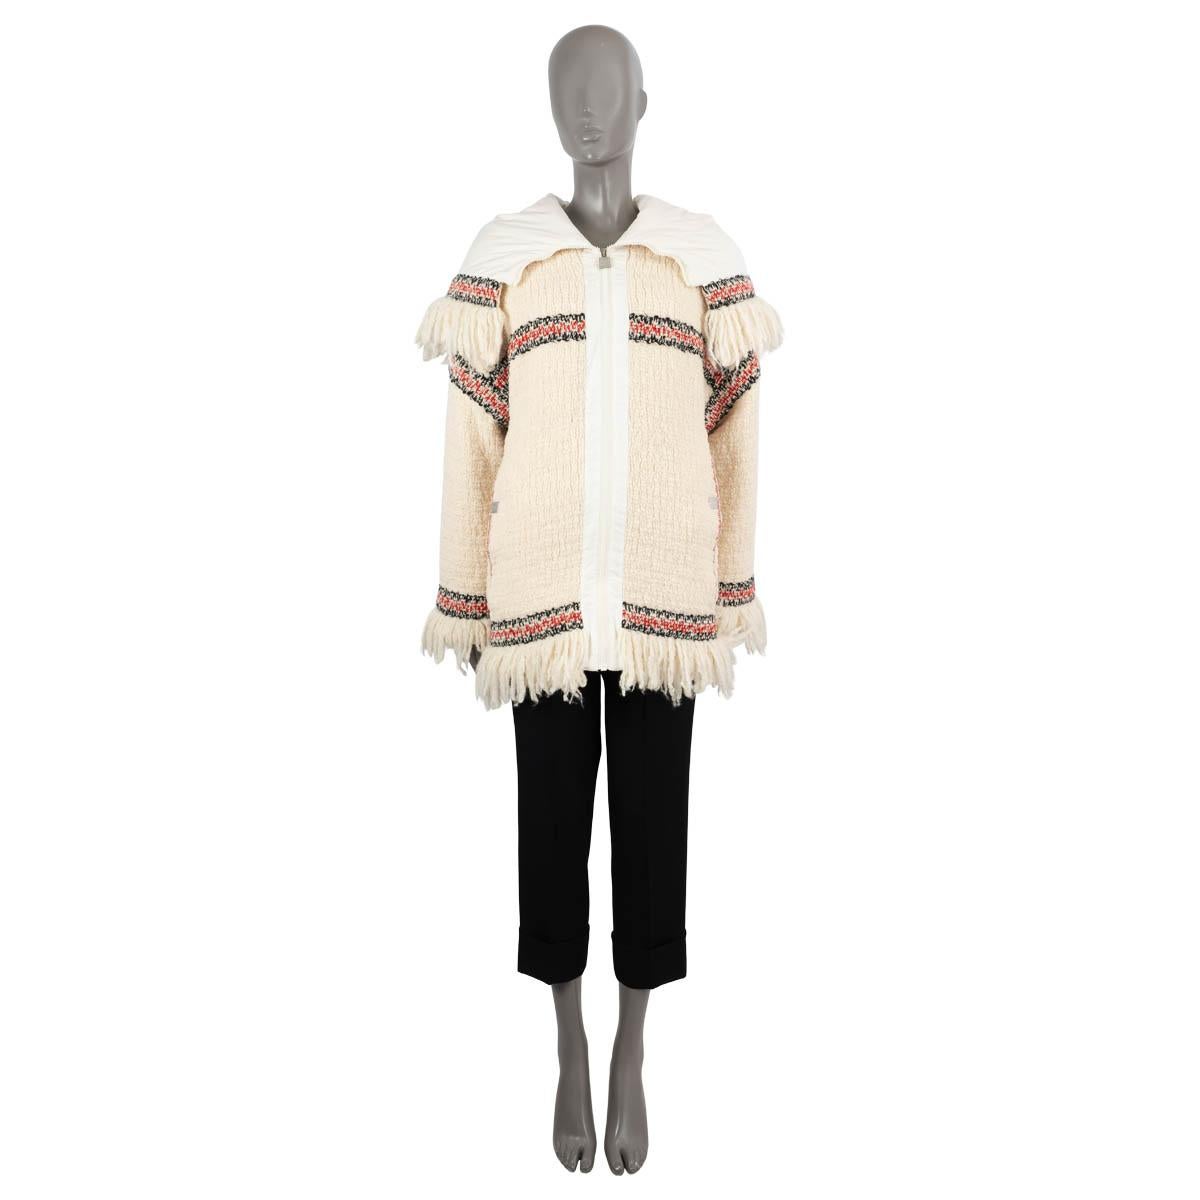 100% authentique Chanel 2008 veste polaire à franges en laine tweed ivoire (100%) et doublée en polyester blanc (100%). Le modèle est doté d'une grande capuche à franges, d'épaules tombantes et de deux poches fendues boutonnées sur le côté. La